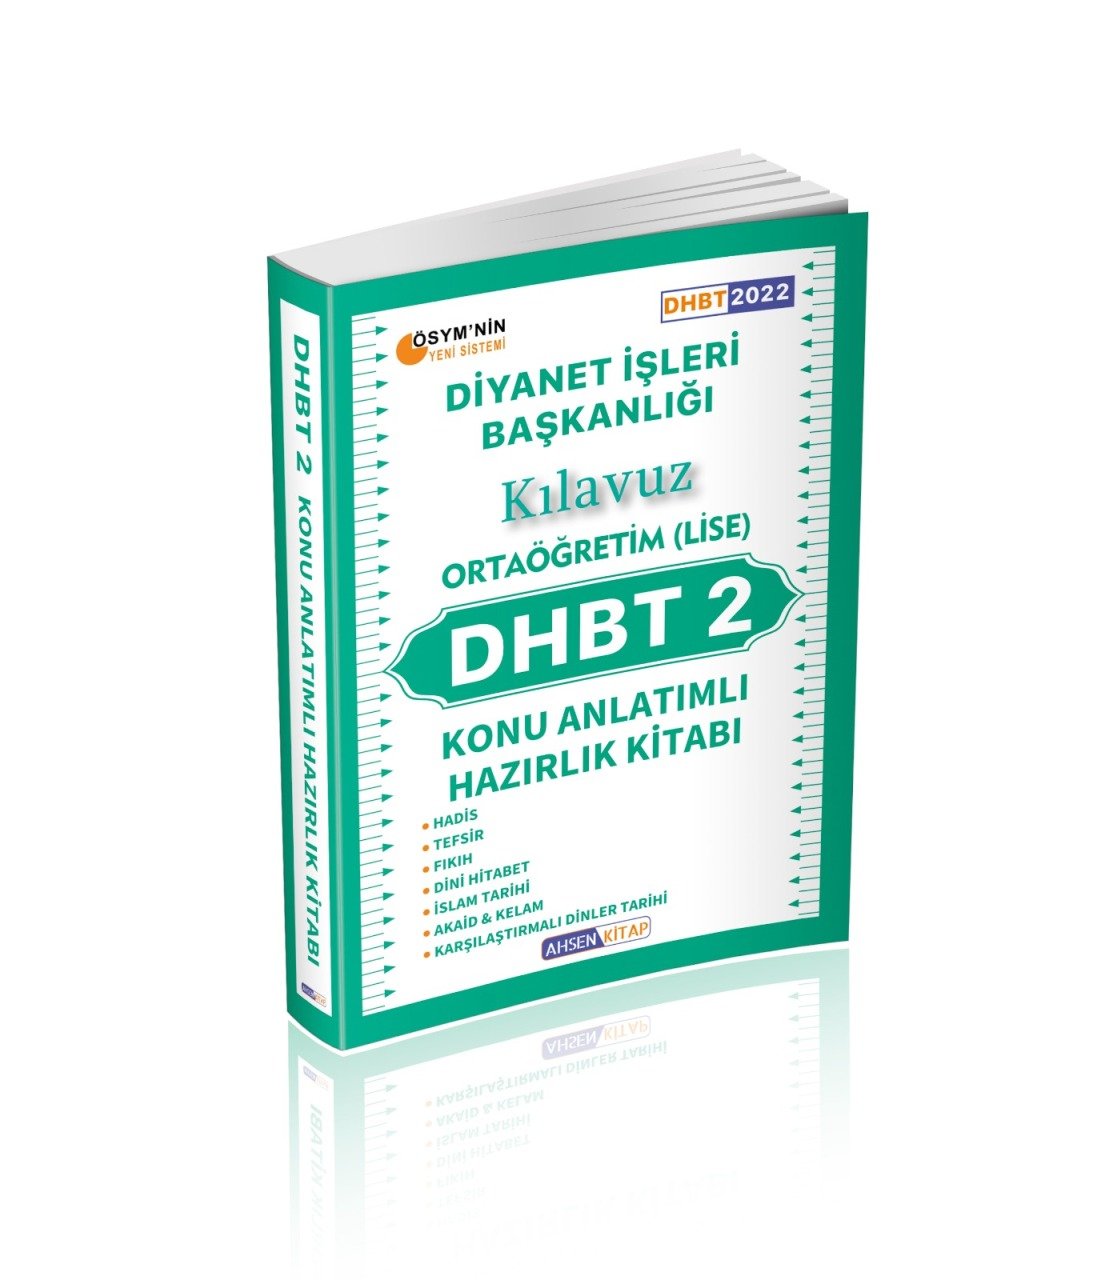 2022 DHBT 2 Ortaöğretim Lise Konu Anlatımlı Klavuz Hazırlık Kitabı Ahsen Kitap Yayınları